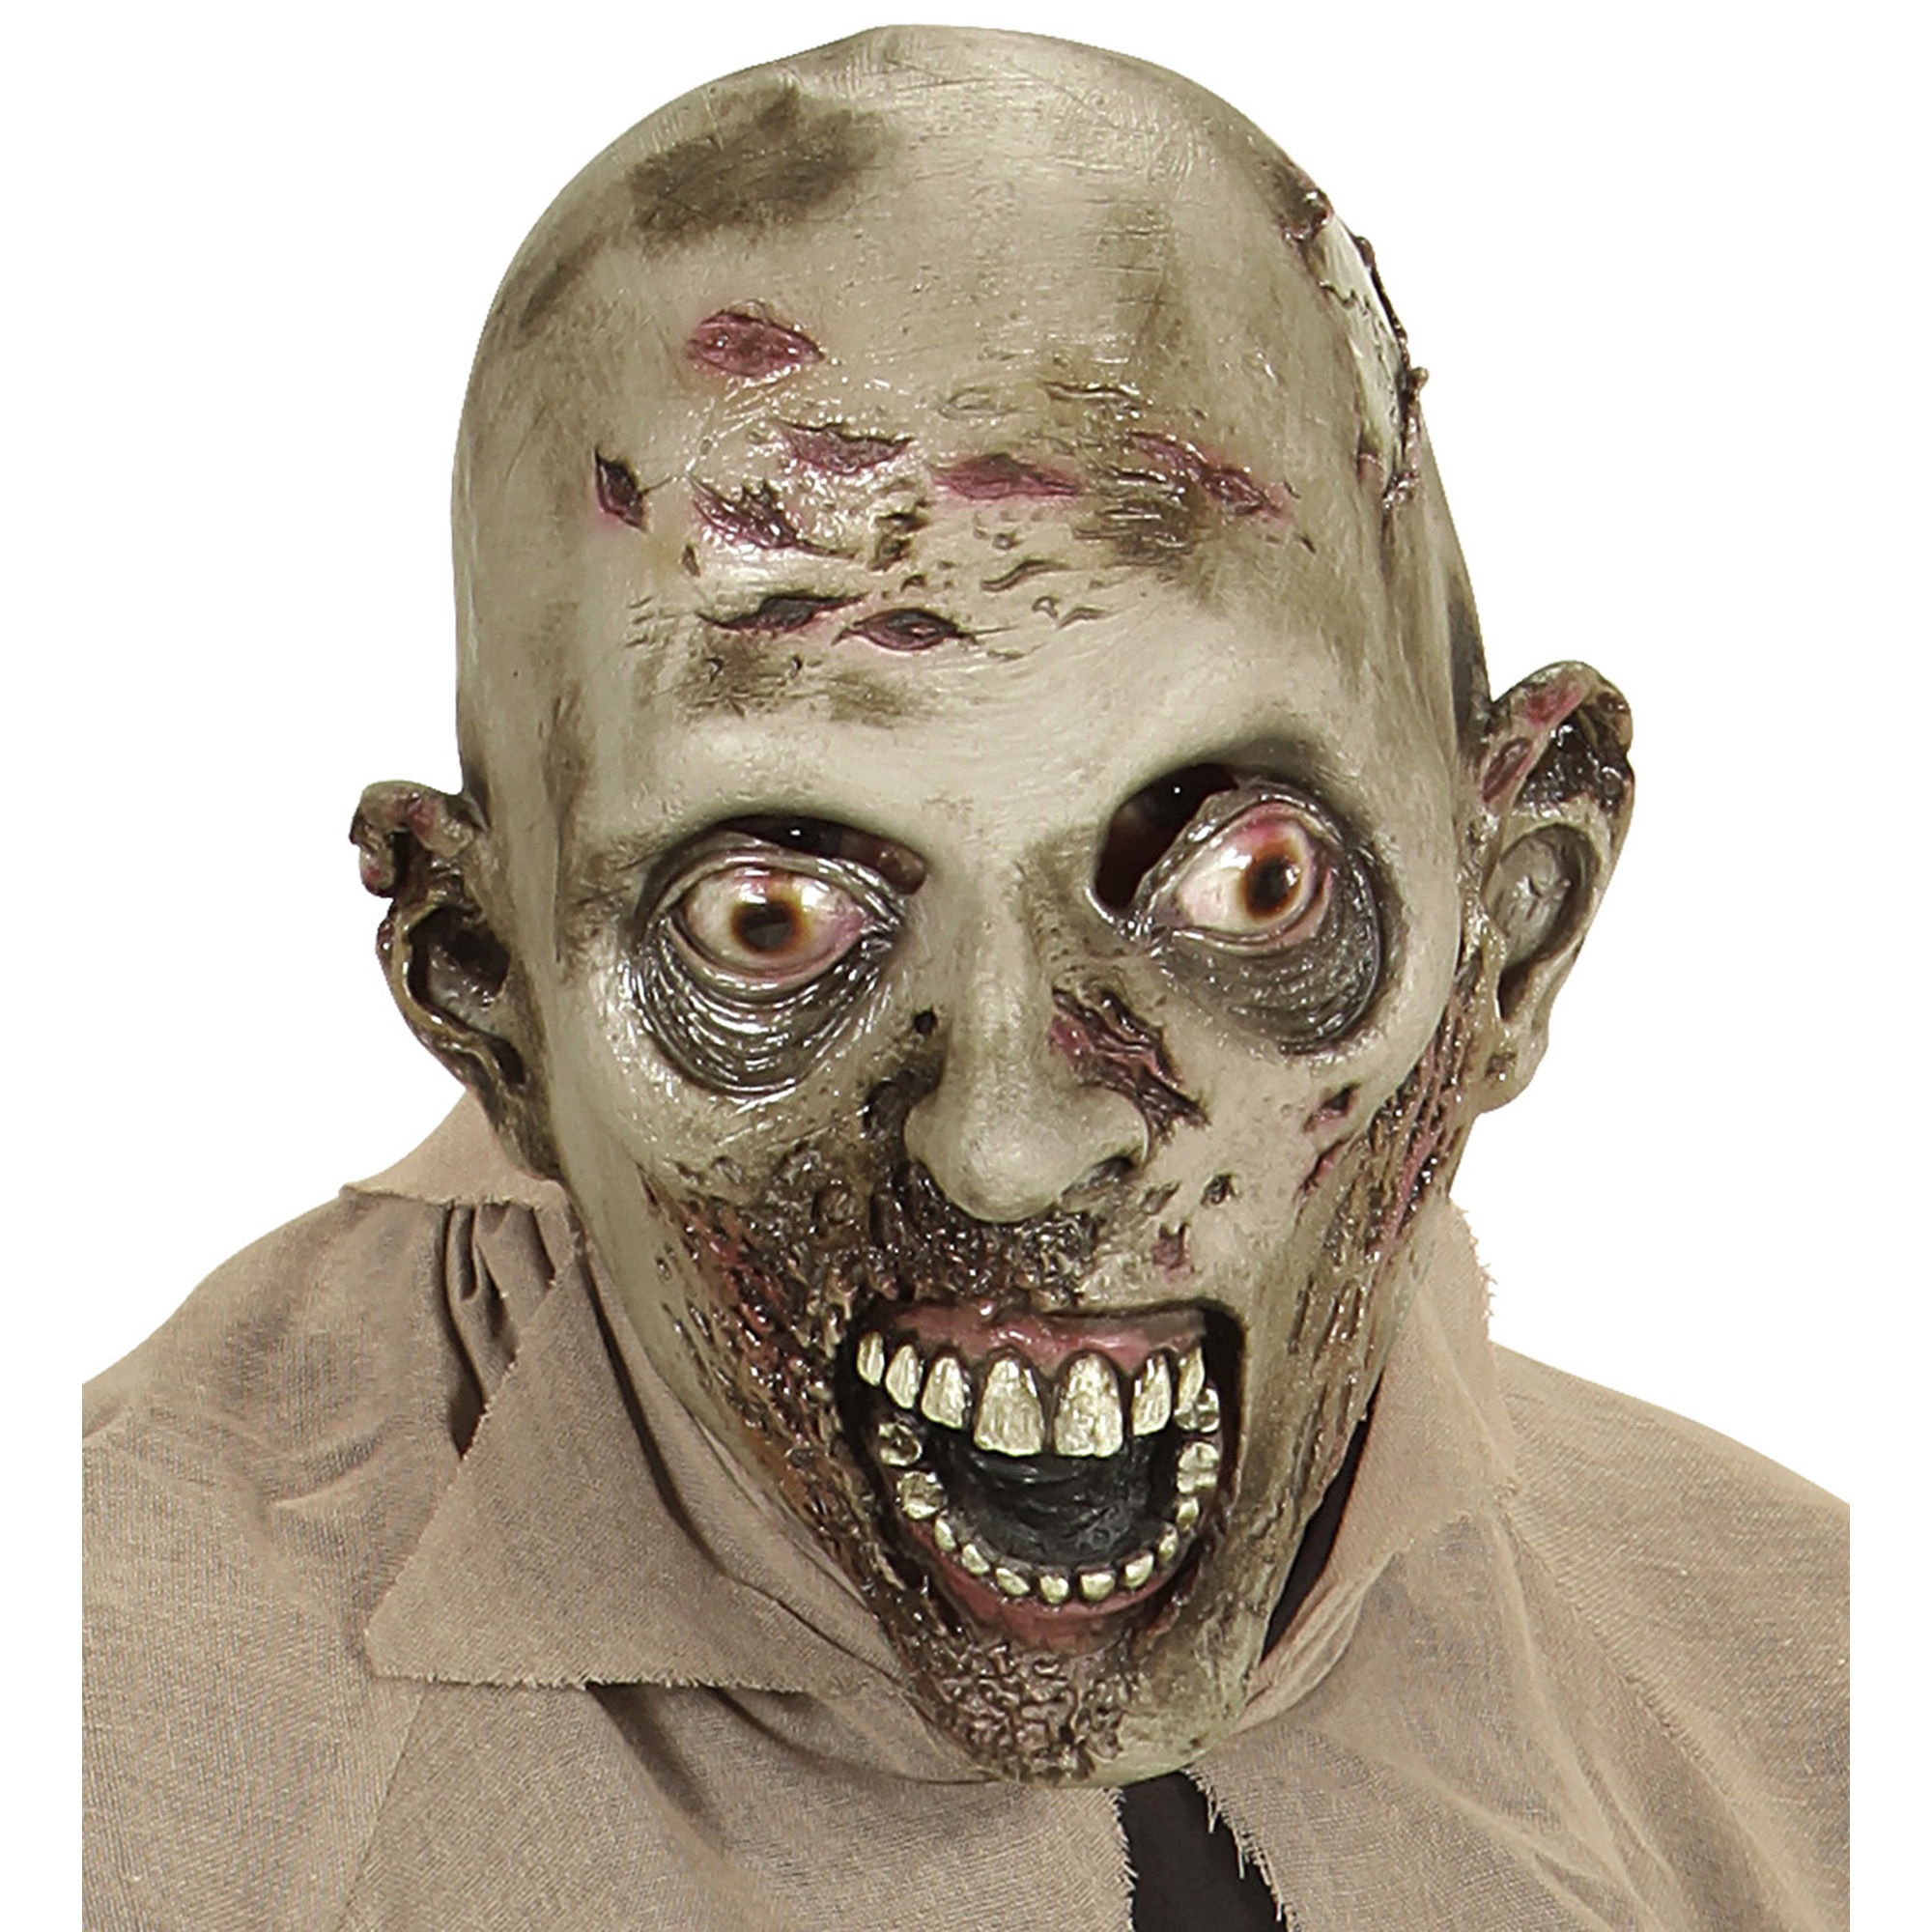 Eng zombie masker melaats getekend in het gezicht